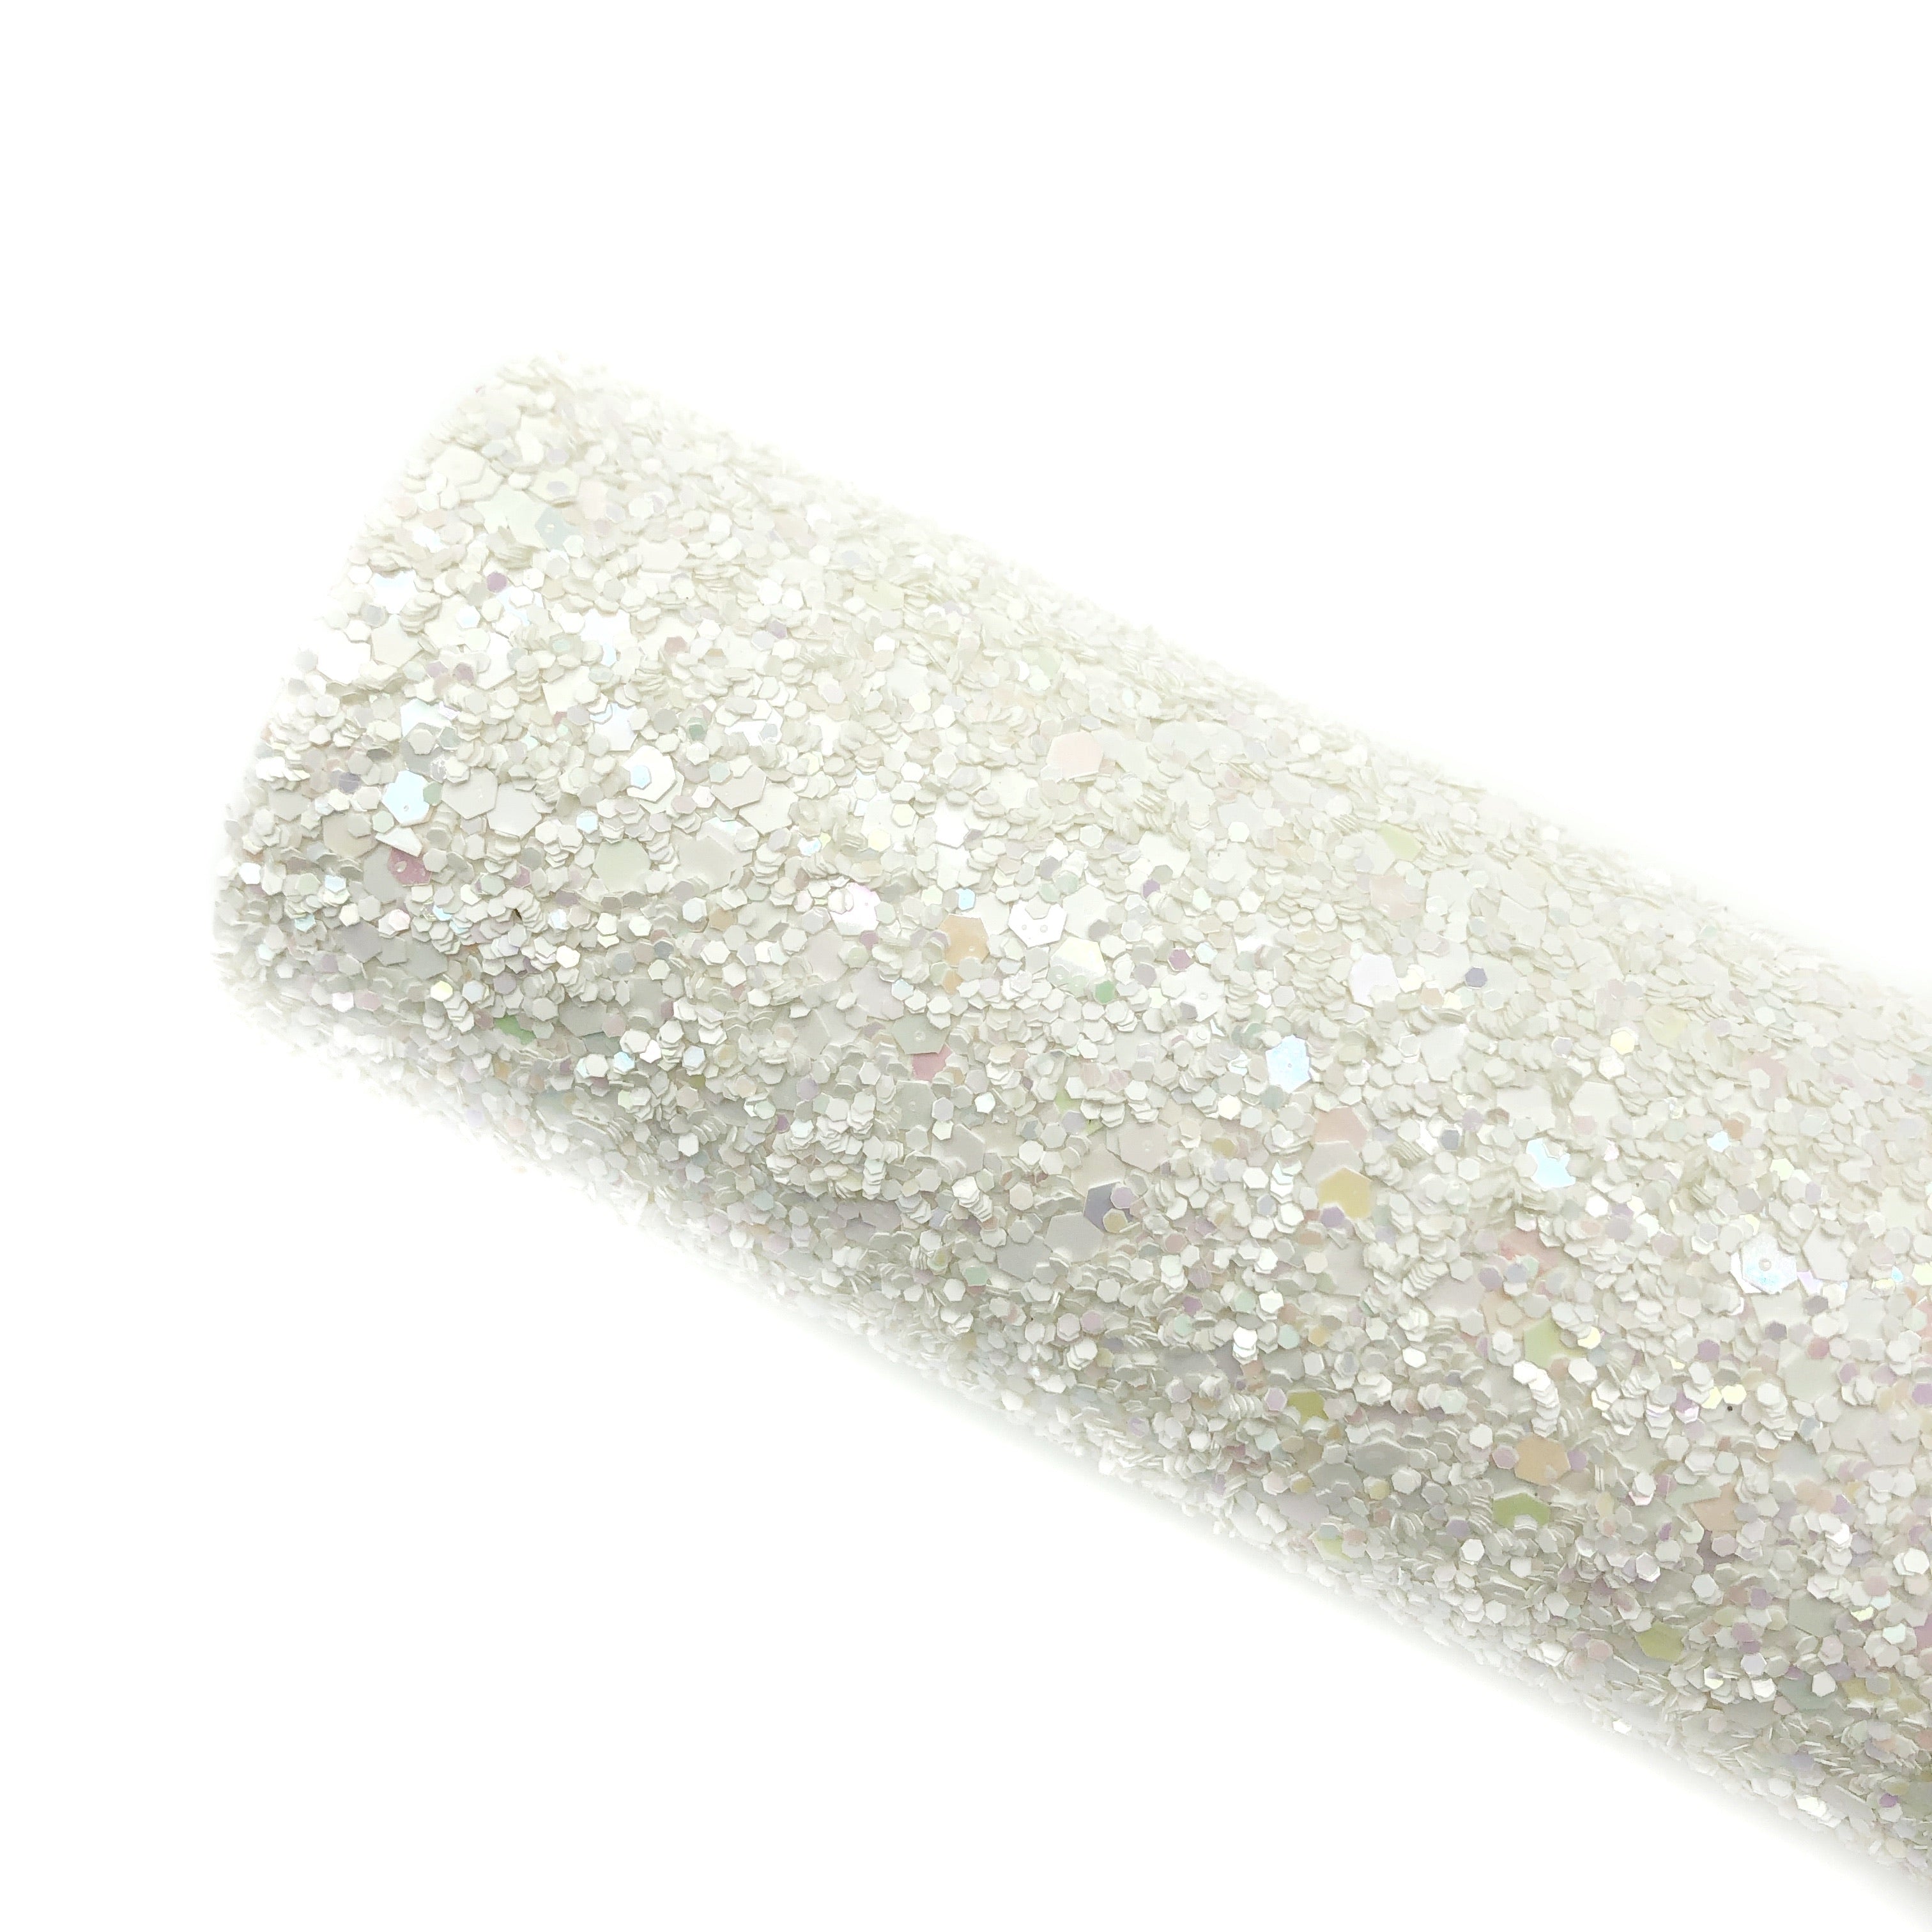 Loose Glitter - Shiny White #84 — Glitz Accessories & Such.